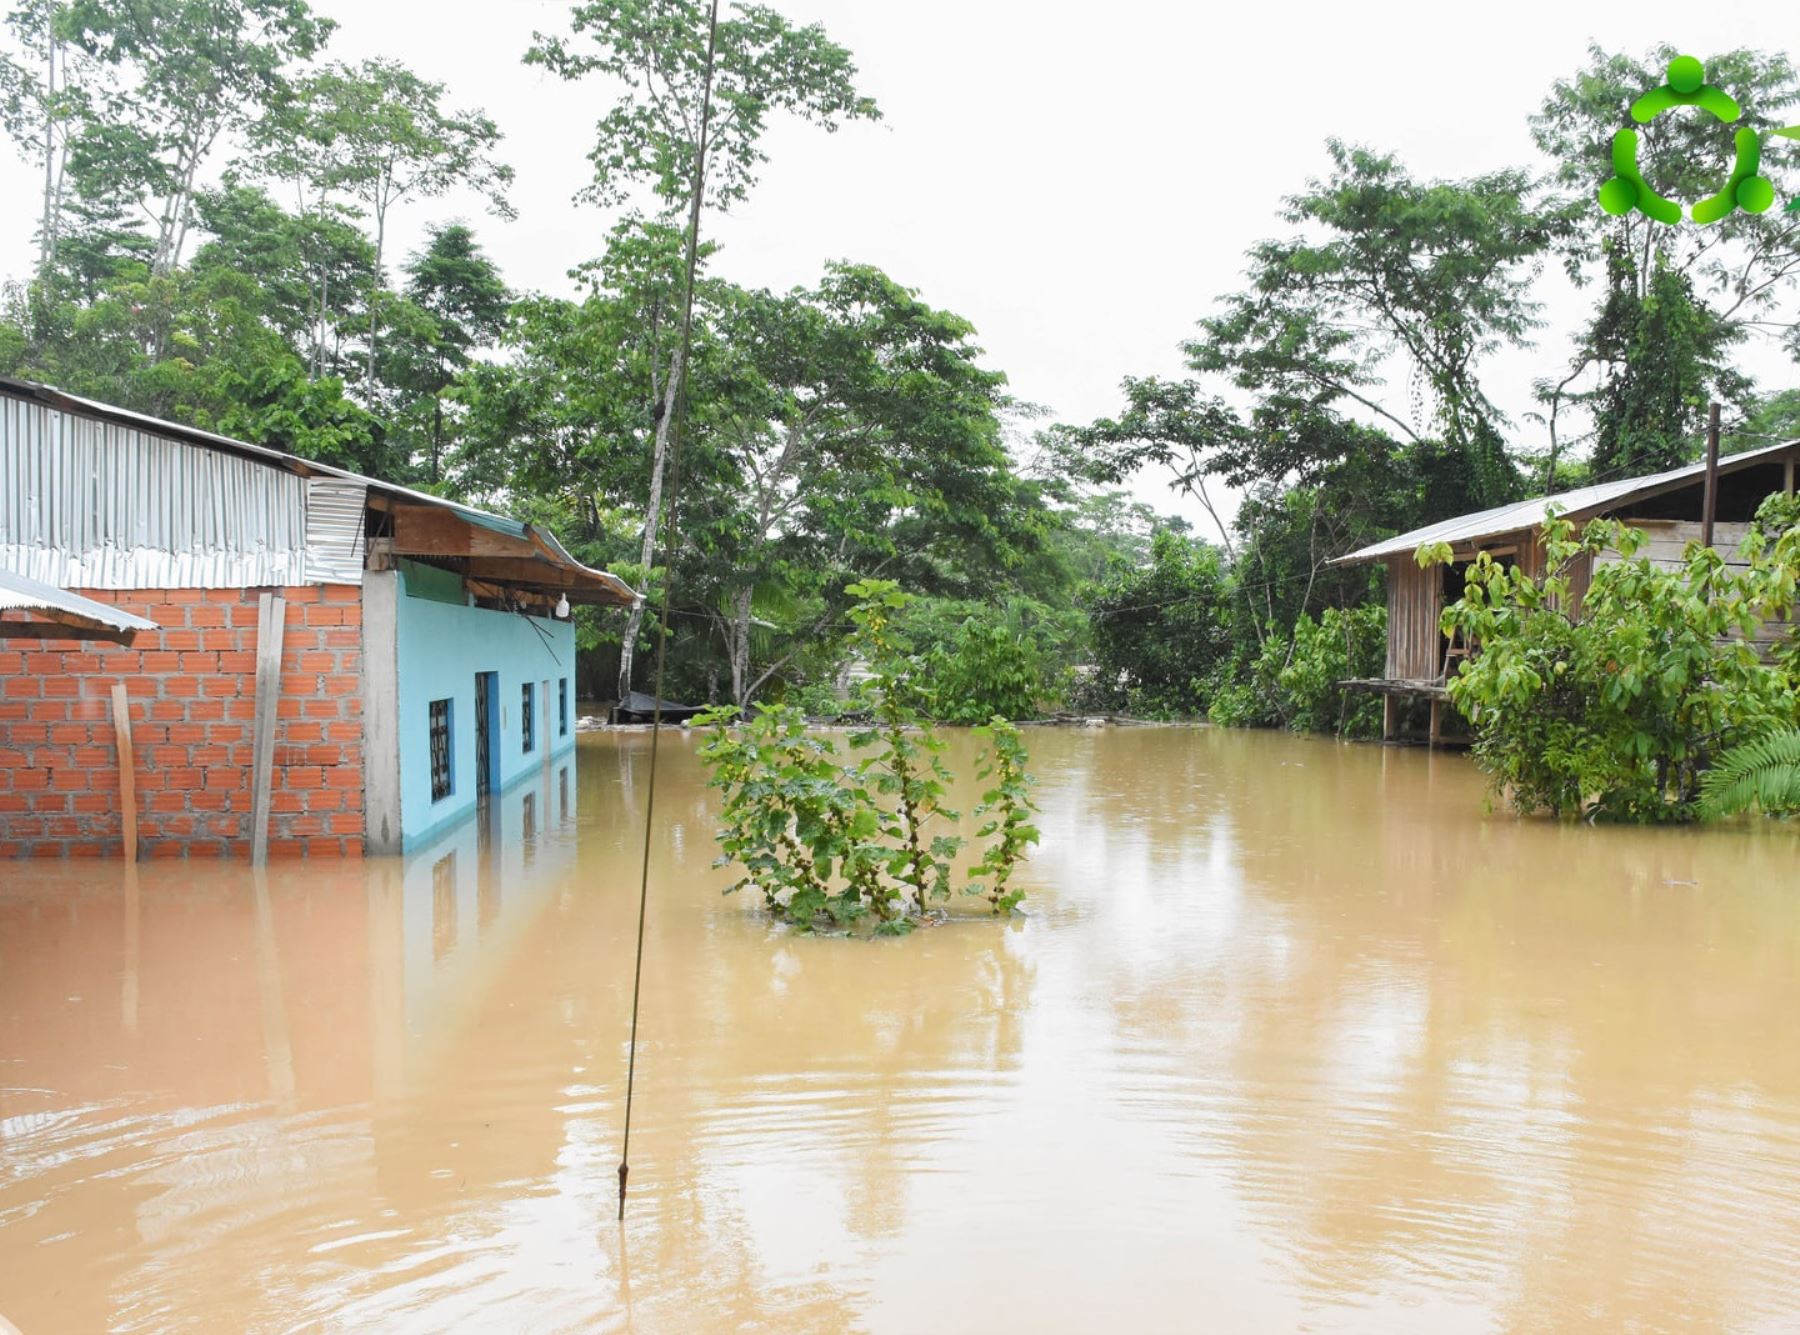 26 viviendas resultaron afectadas por la caída de lluvias intensas en seis distritos de la región Ucayali. Foto: municipalidad de Irazola.